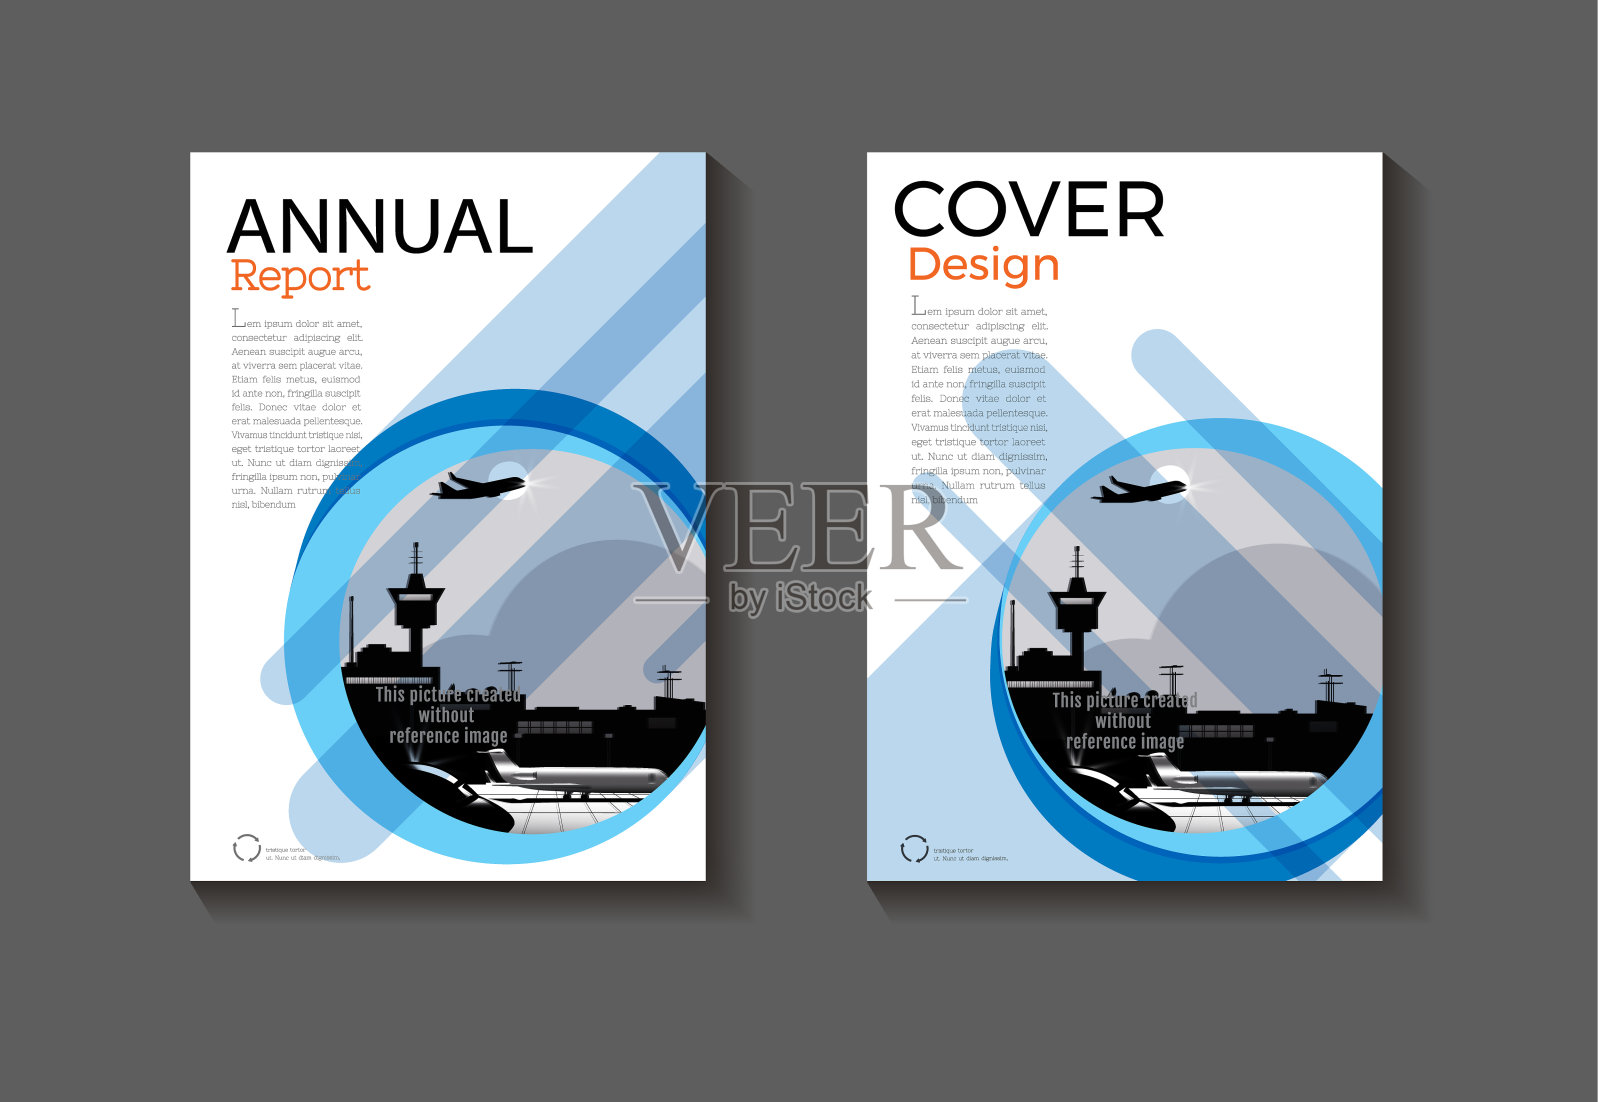 蓝色抽象封面设计现代书籍封面抽象小册子封面模板，年度报告，杂志和传单布局矢量a4设计模板素材